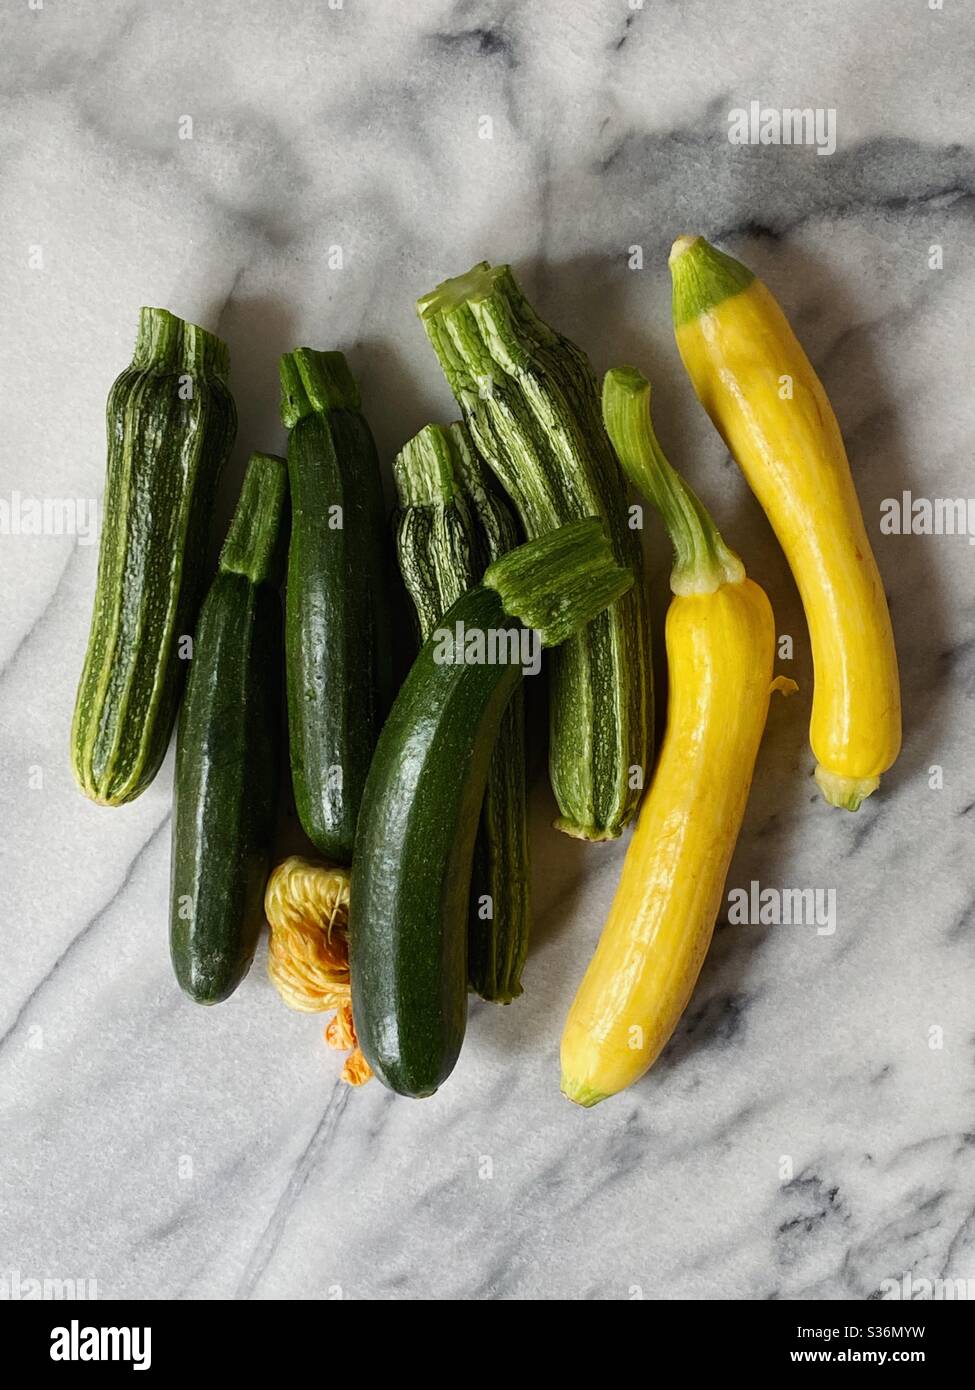 Zucca estiva assortita, zucchine, zucca gialla e Romanesco. Foto Stock